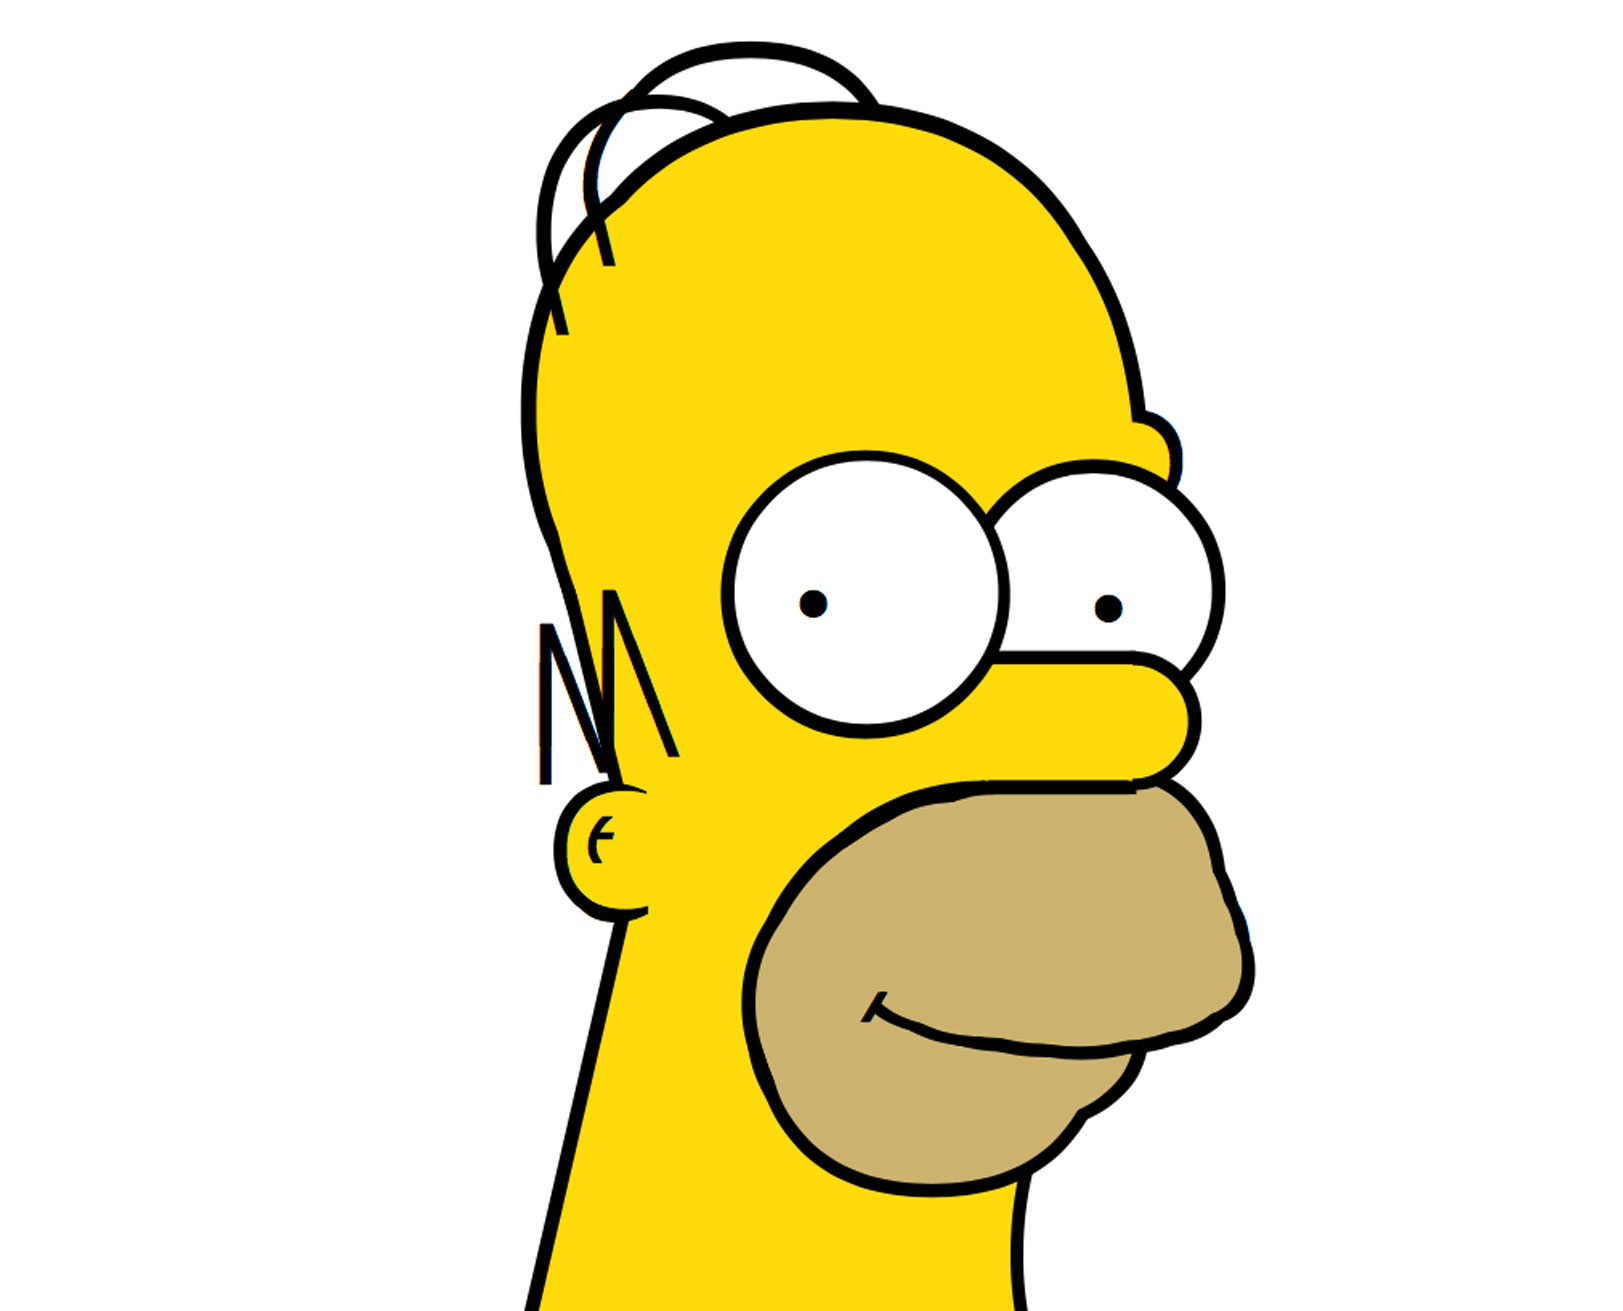 Homer illustration